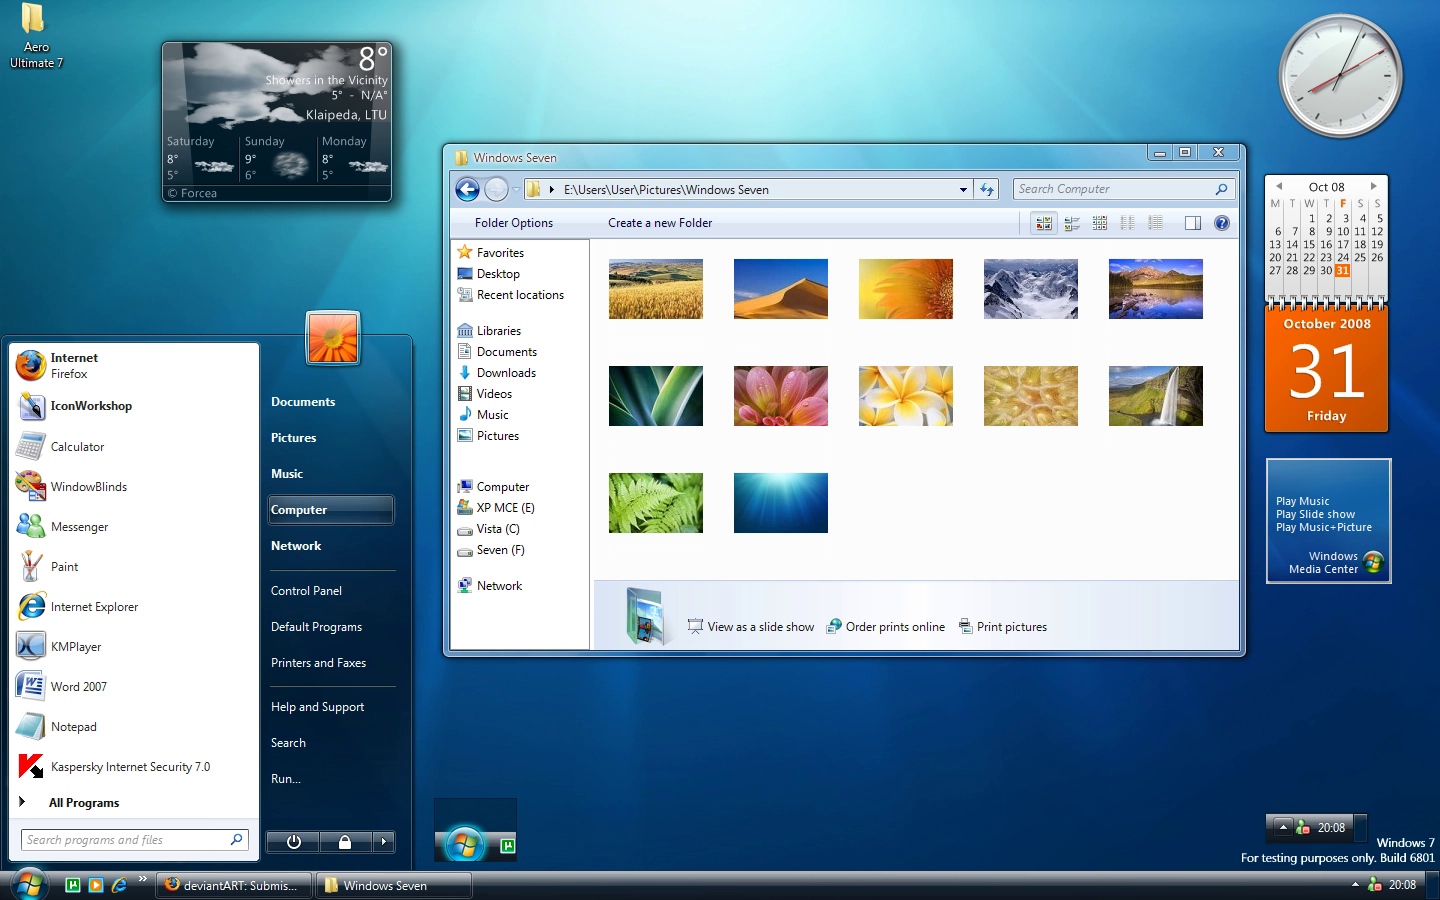 Thay đổi hình nền đăng nhập cho máy Windows 7 - Fptshop.com.vn